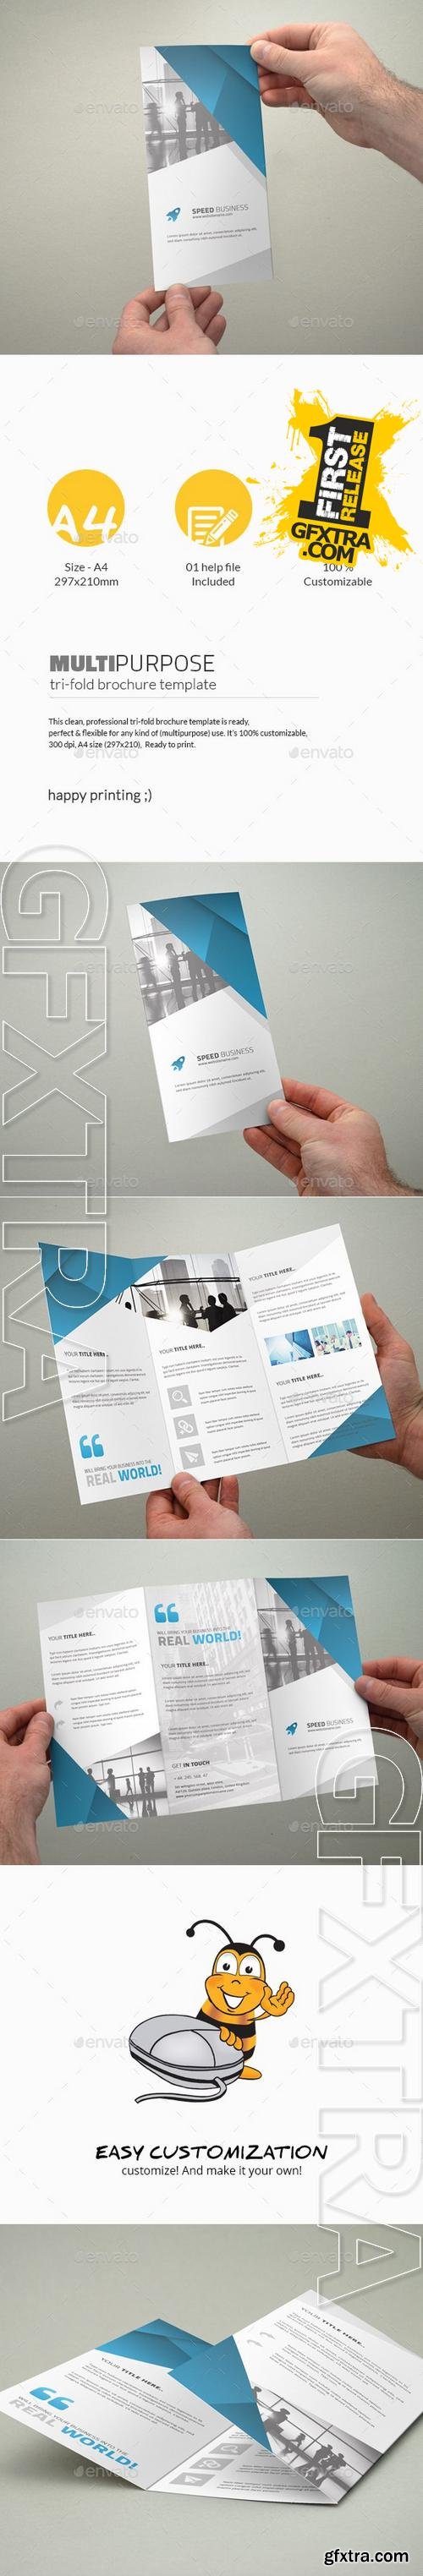 Tri-Fold Brochure - Multipurpose - Graphicriver 11390783